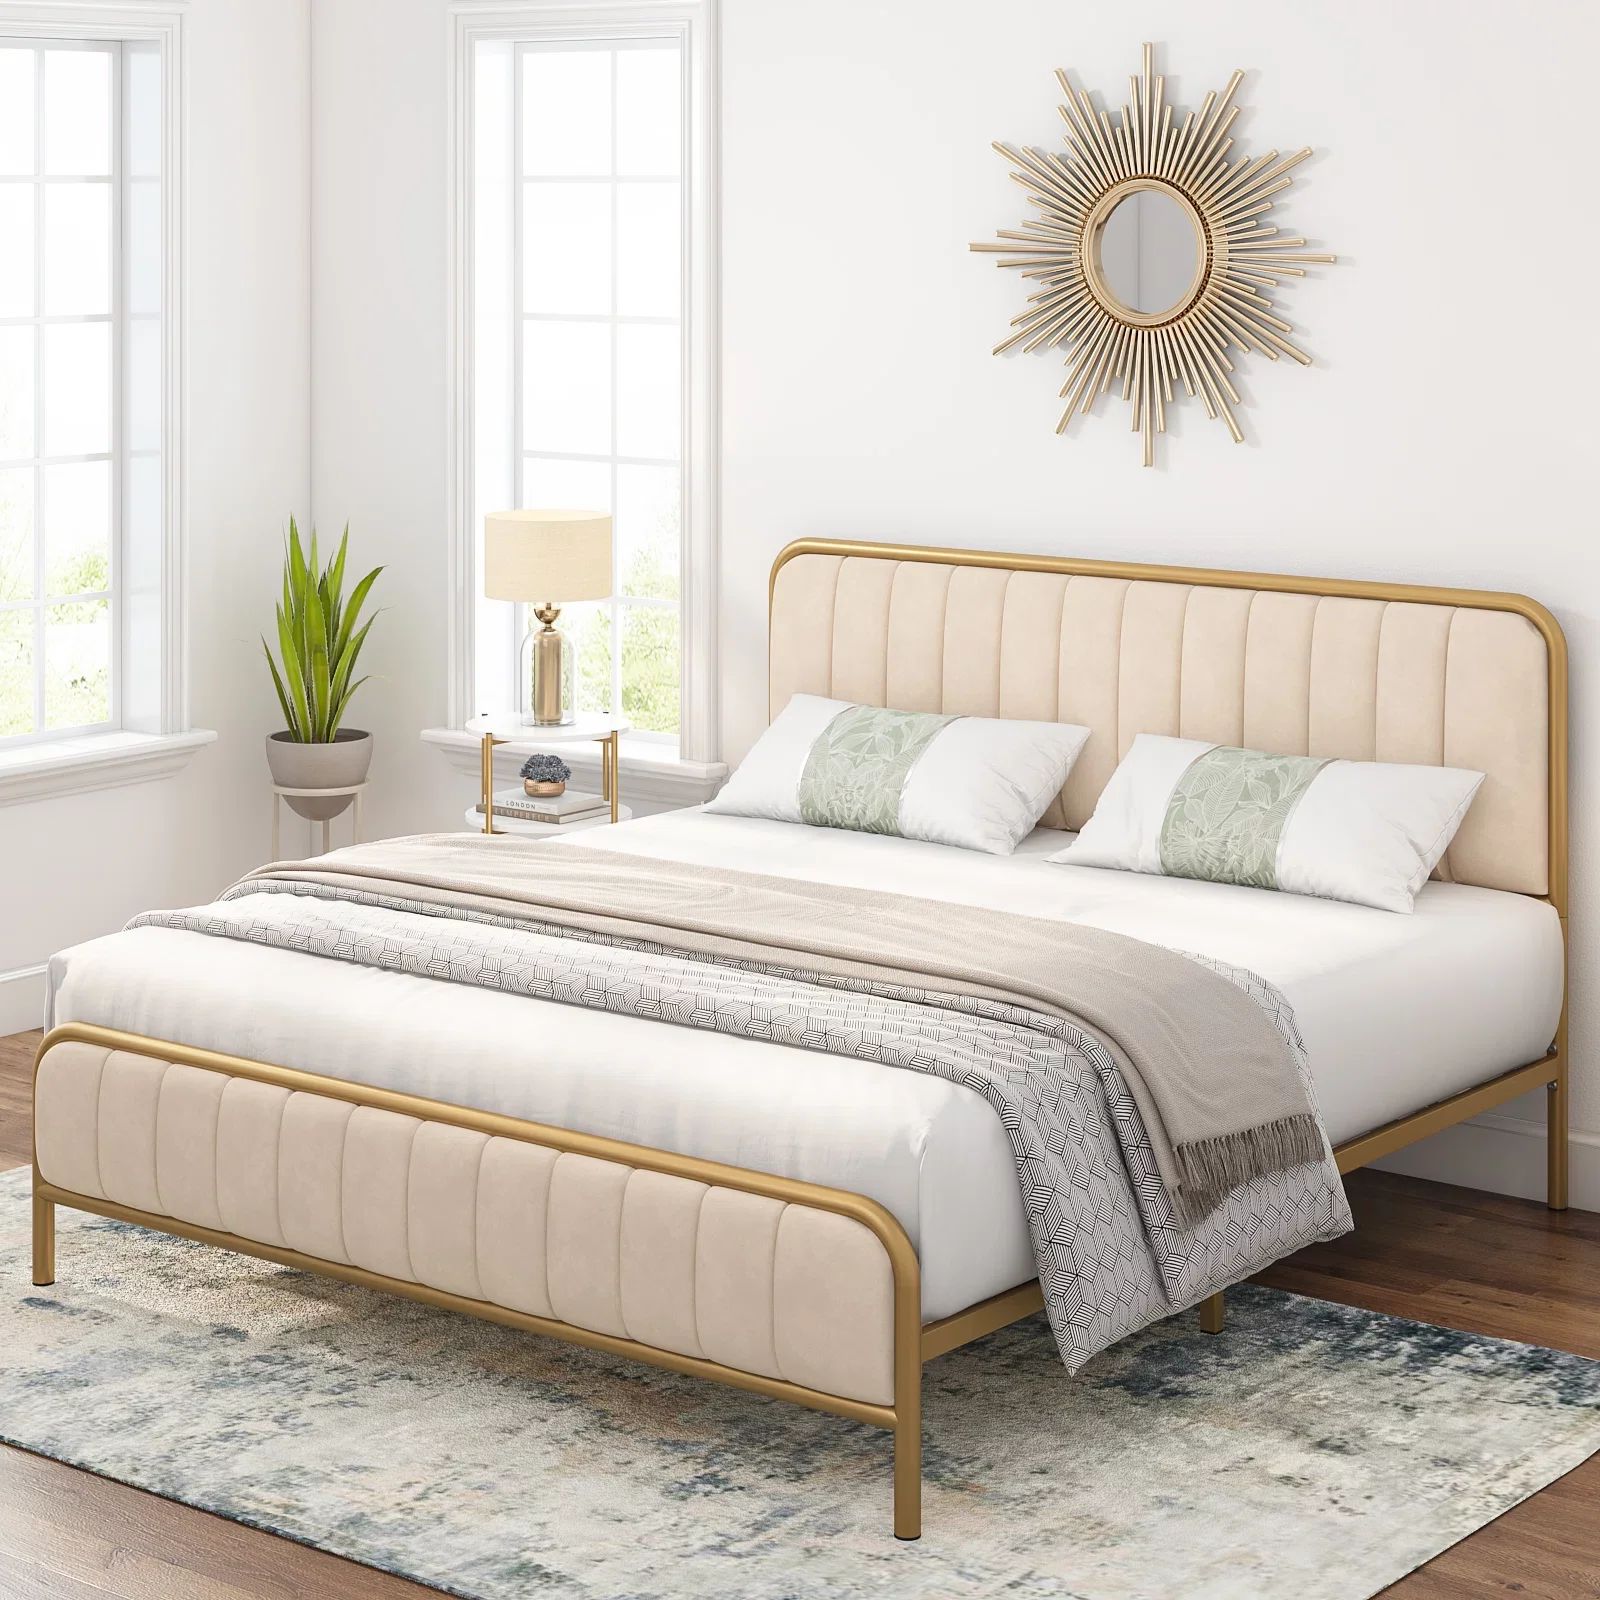 Homfa King Size Bed Frame, Metal Tubular Platform Bed Frame with Upholstered Headboard, Beige Whi... | Walmart (US)